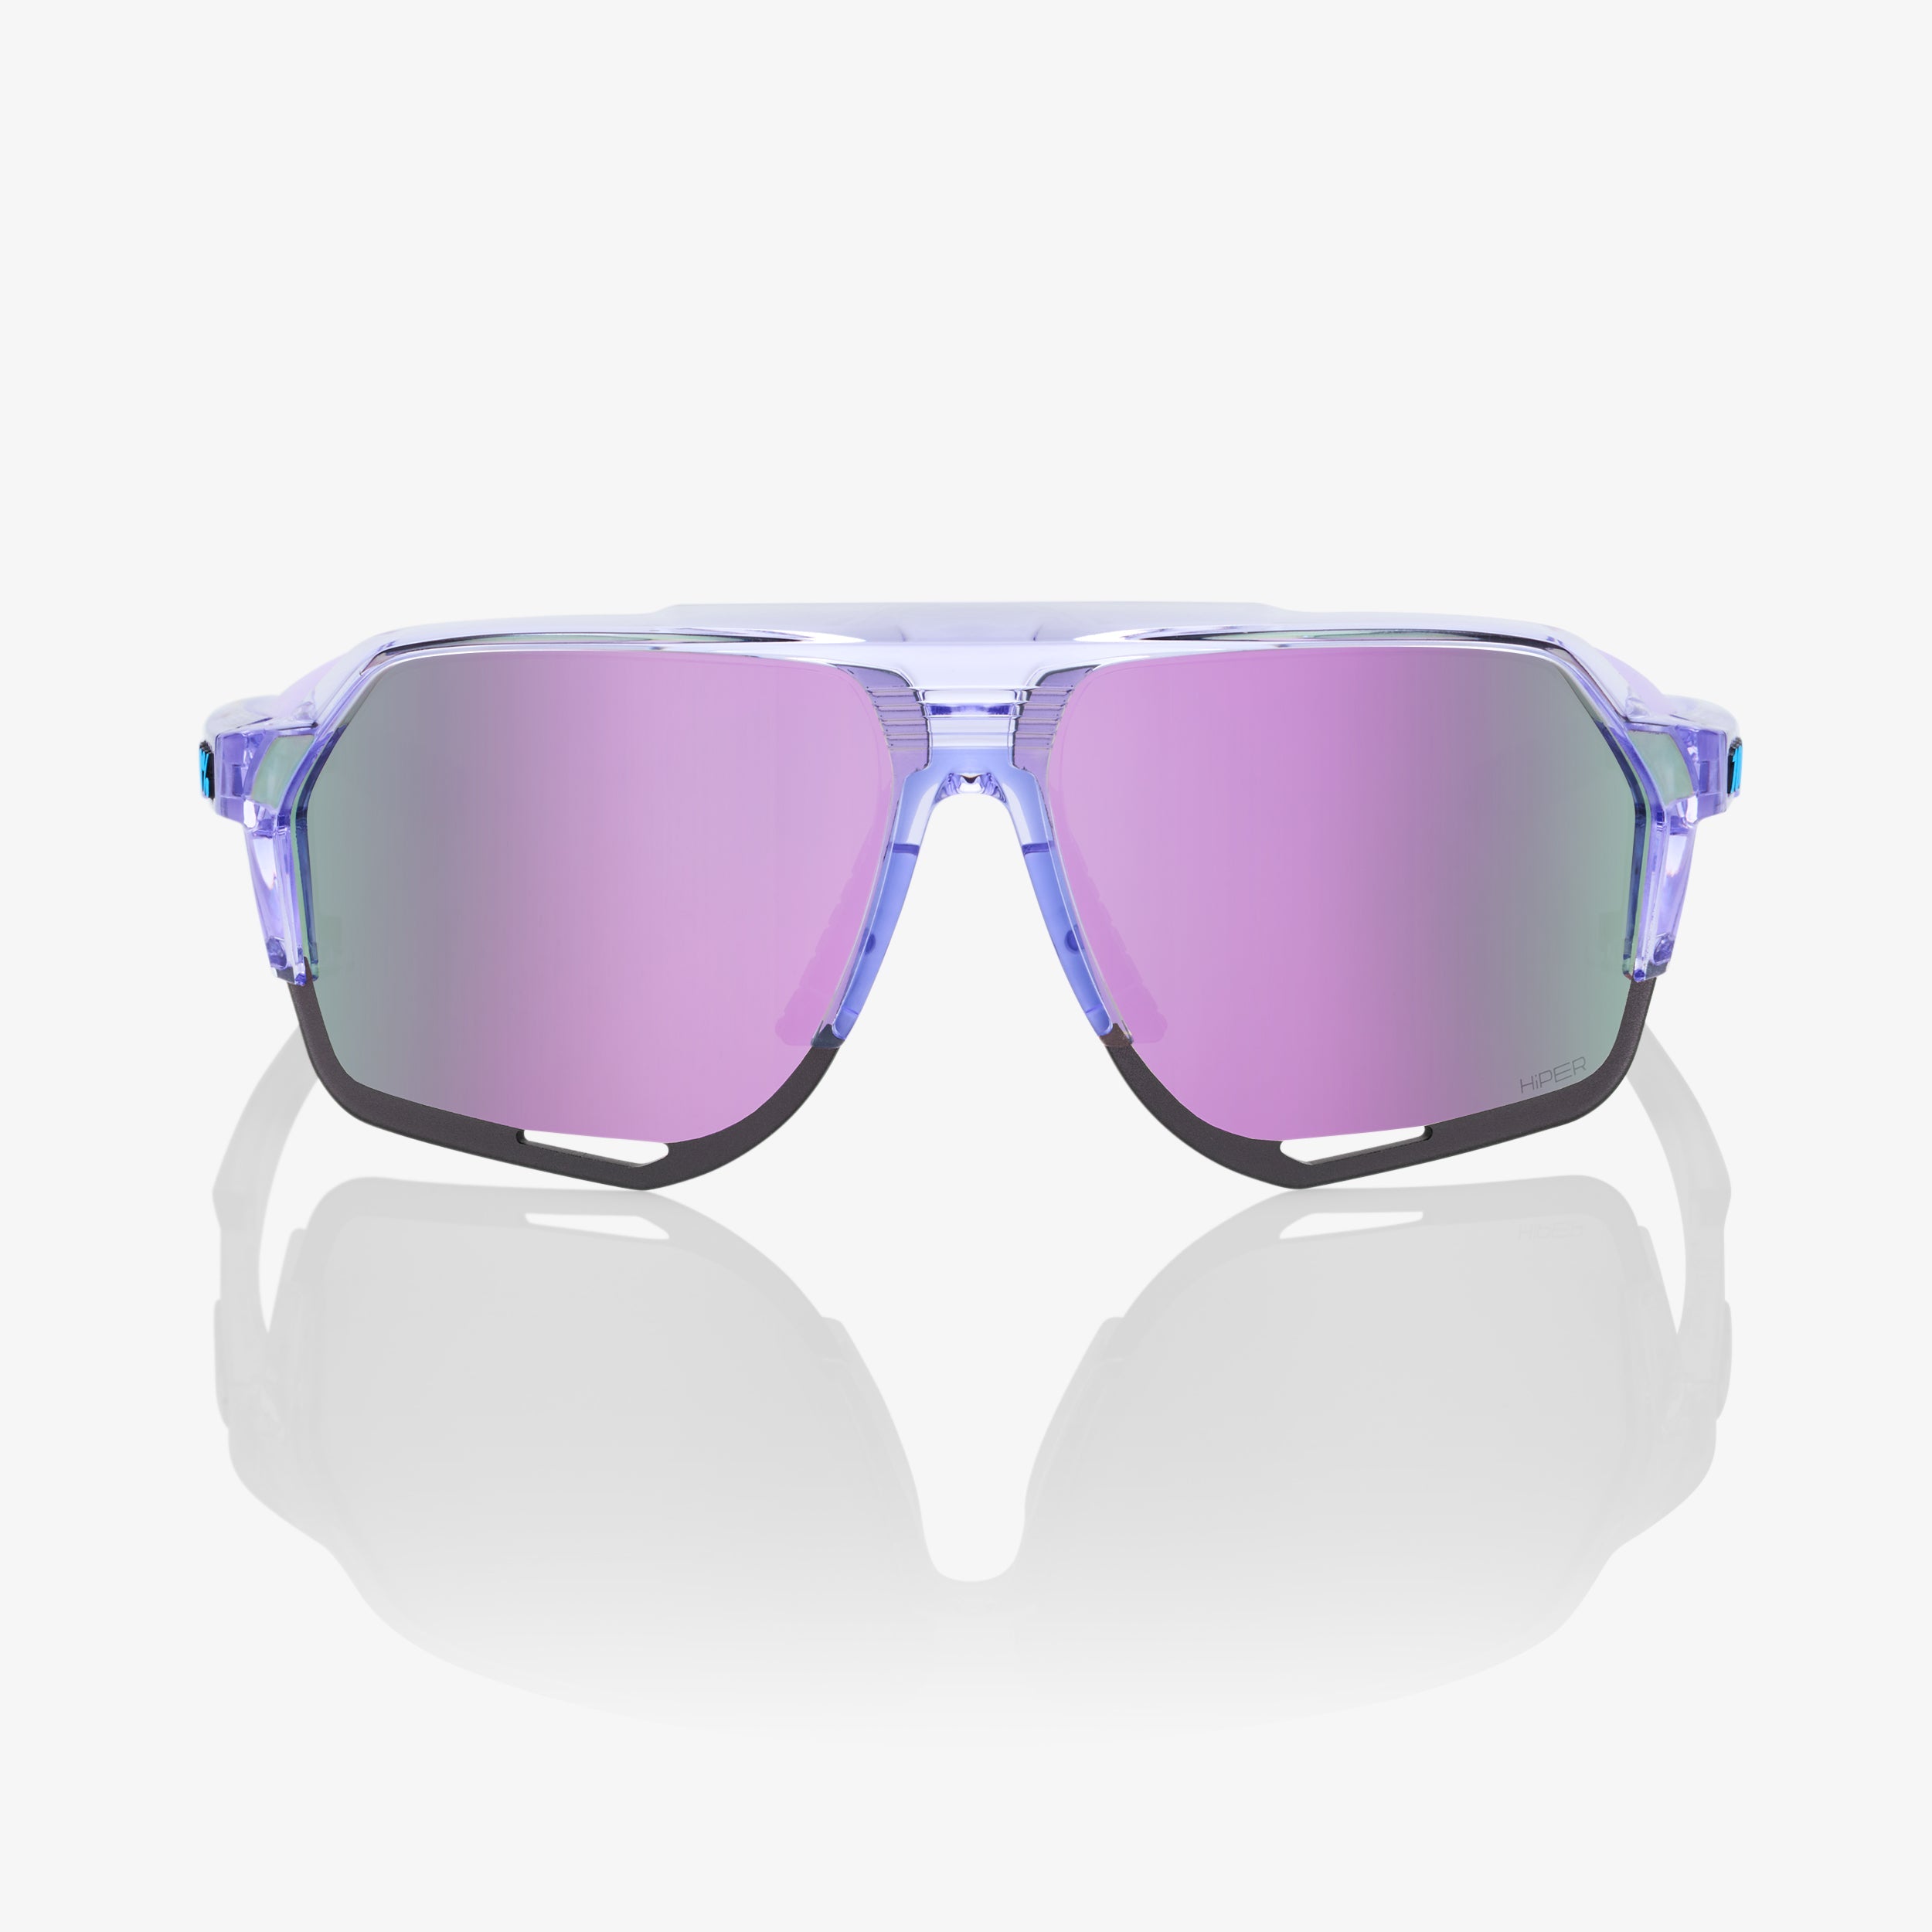 NORVIK™ - Polished Translucent Lavender - HiPER® Lavender Mirror Lens - Secondary